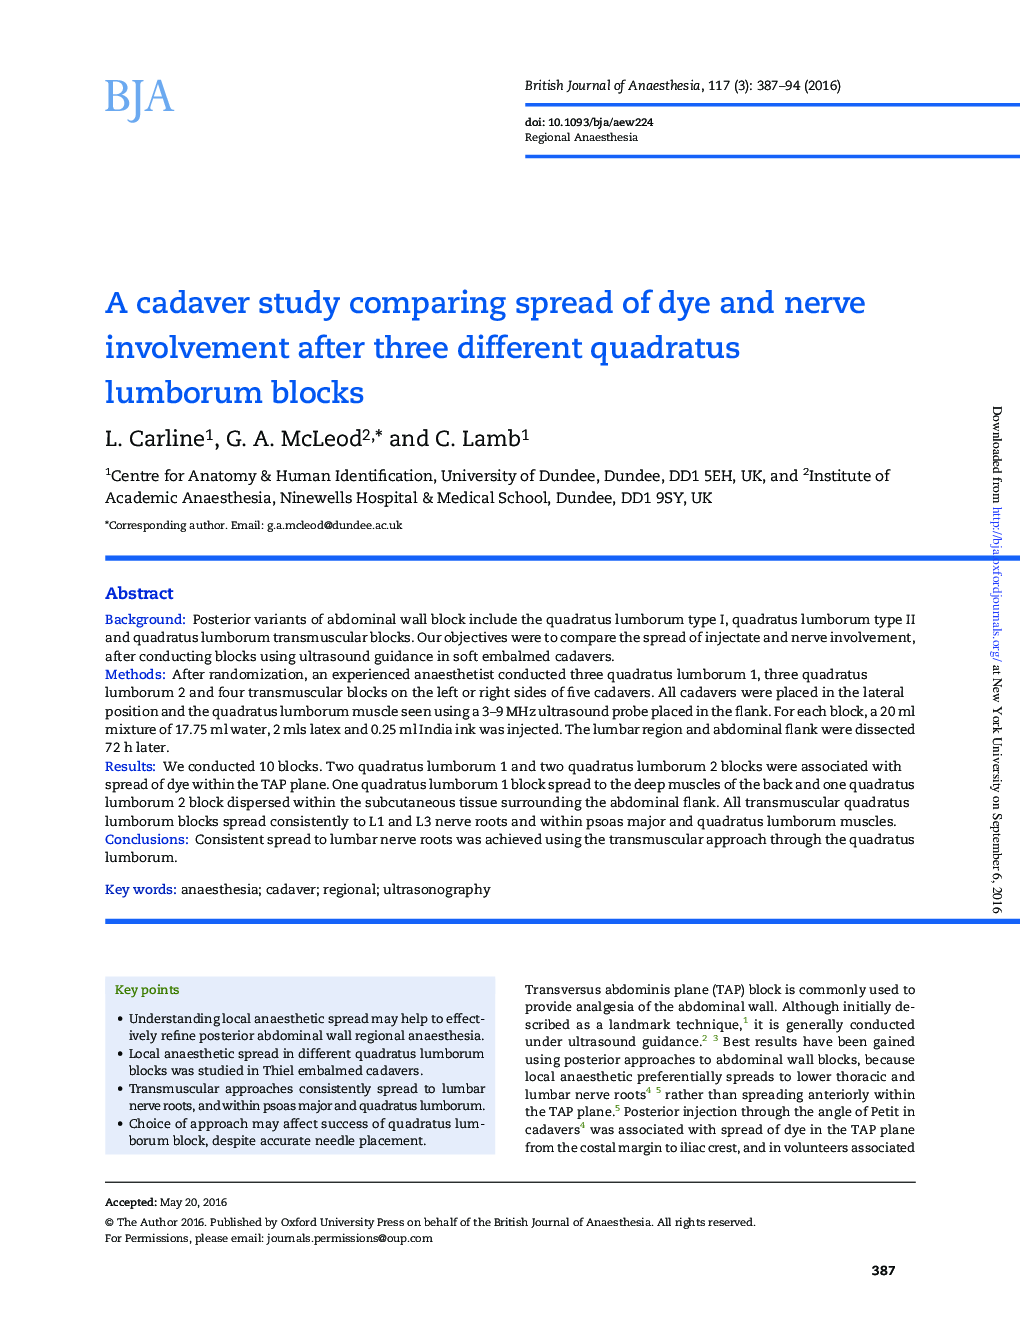 یک مطالعه کاداور در مقایسه با گسترش سهمیه رنگ و عصب پس از سه بلوک لومبومور کوادراتوس متفاوت است 